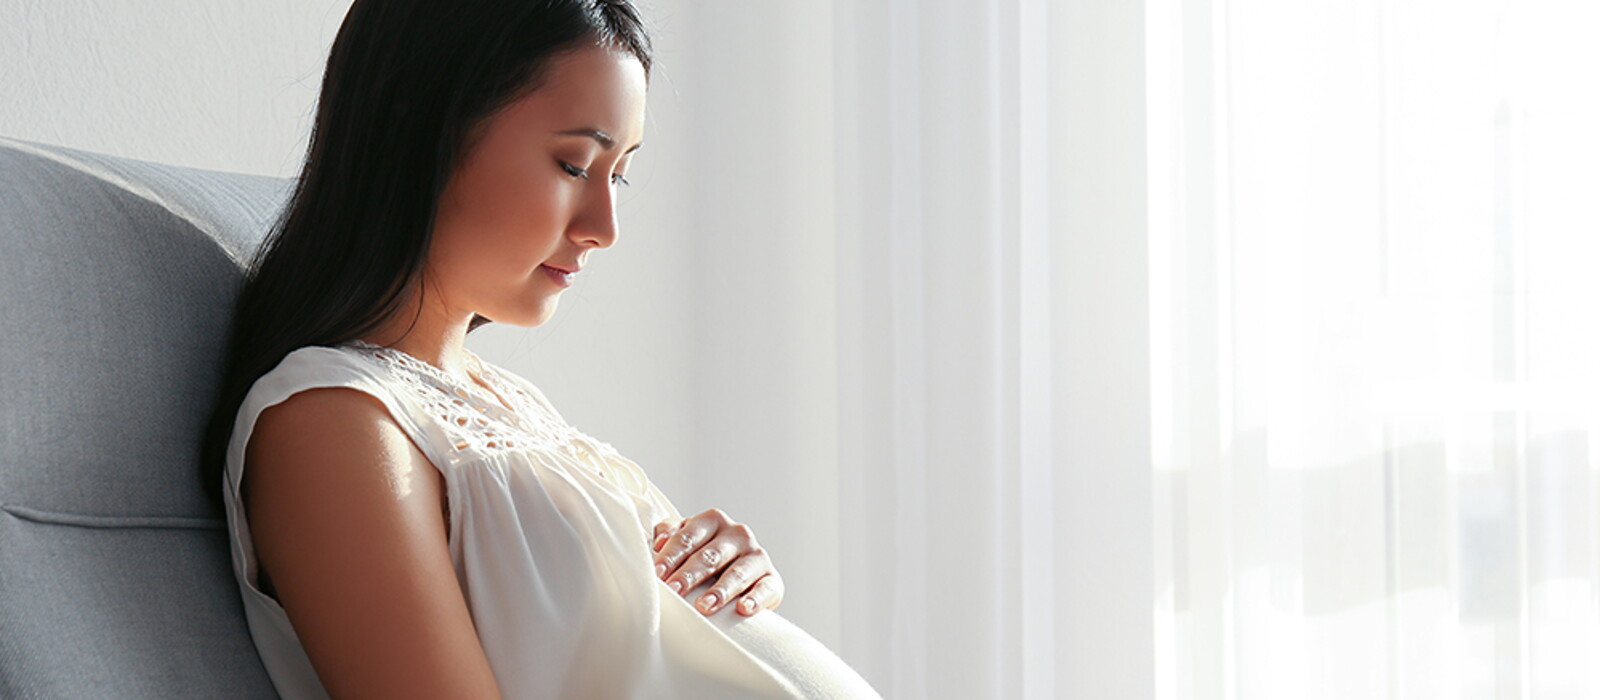 孕婦情緒起伏大恐影響胎兒？醫師帶你認識懷孕賀爾蒙